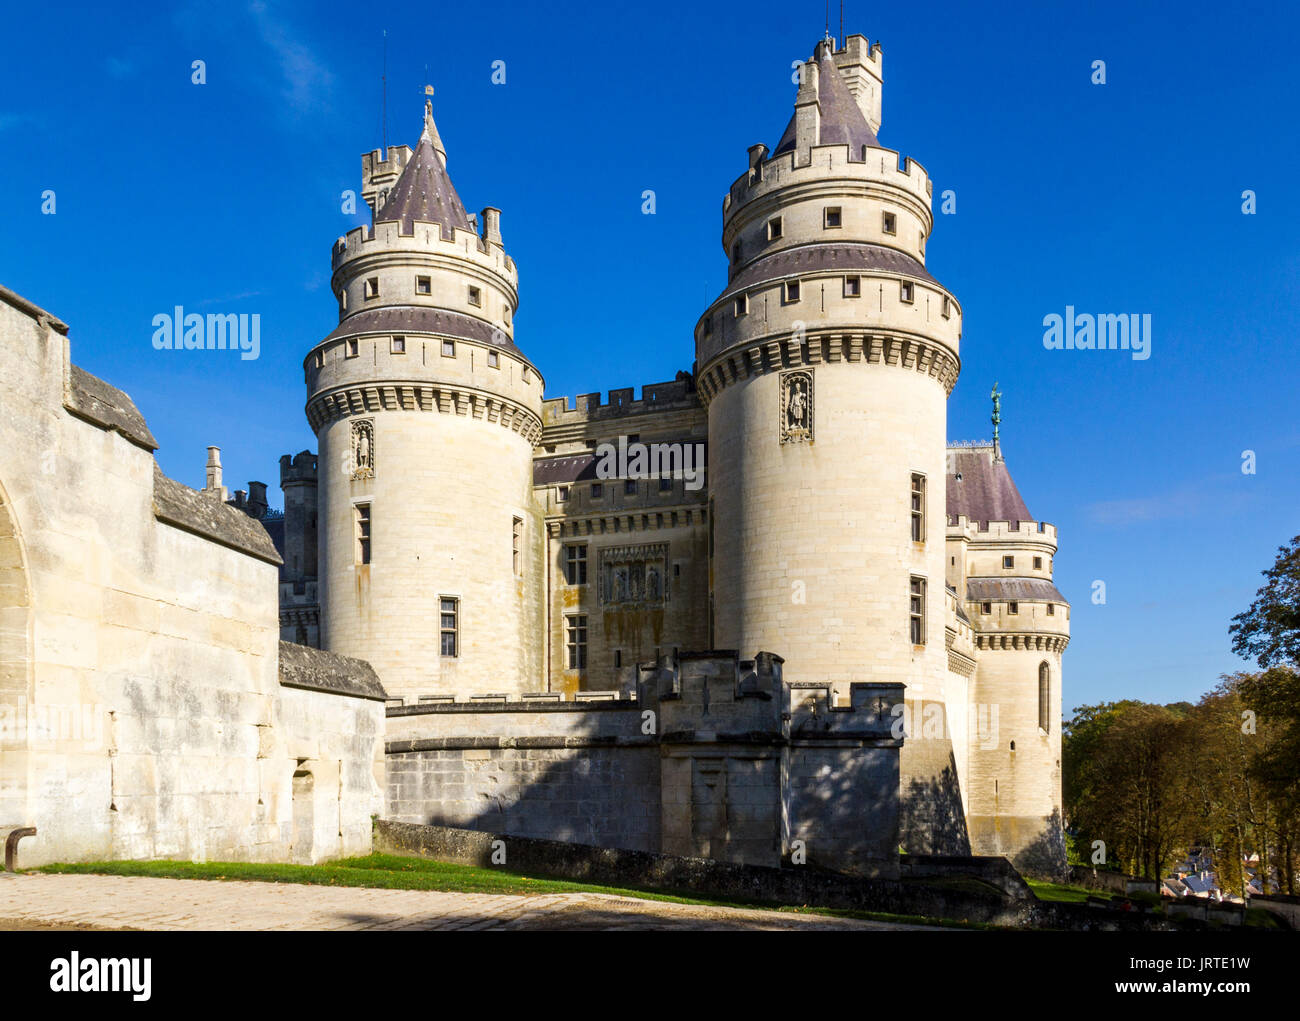 Château médiéval de Pierrefonds, Picardie, France. Extérieur avec crenelations et tourelles Banque D'Images